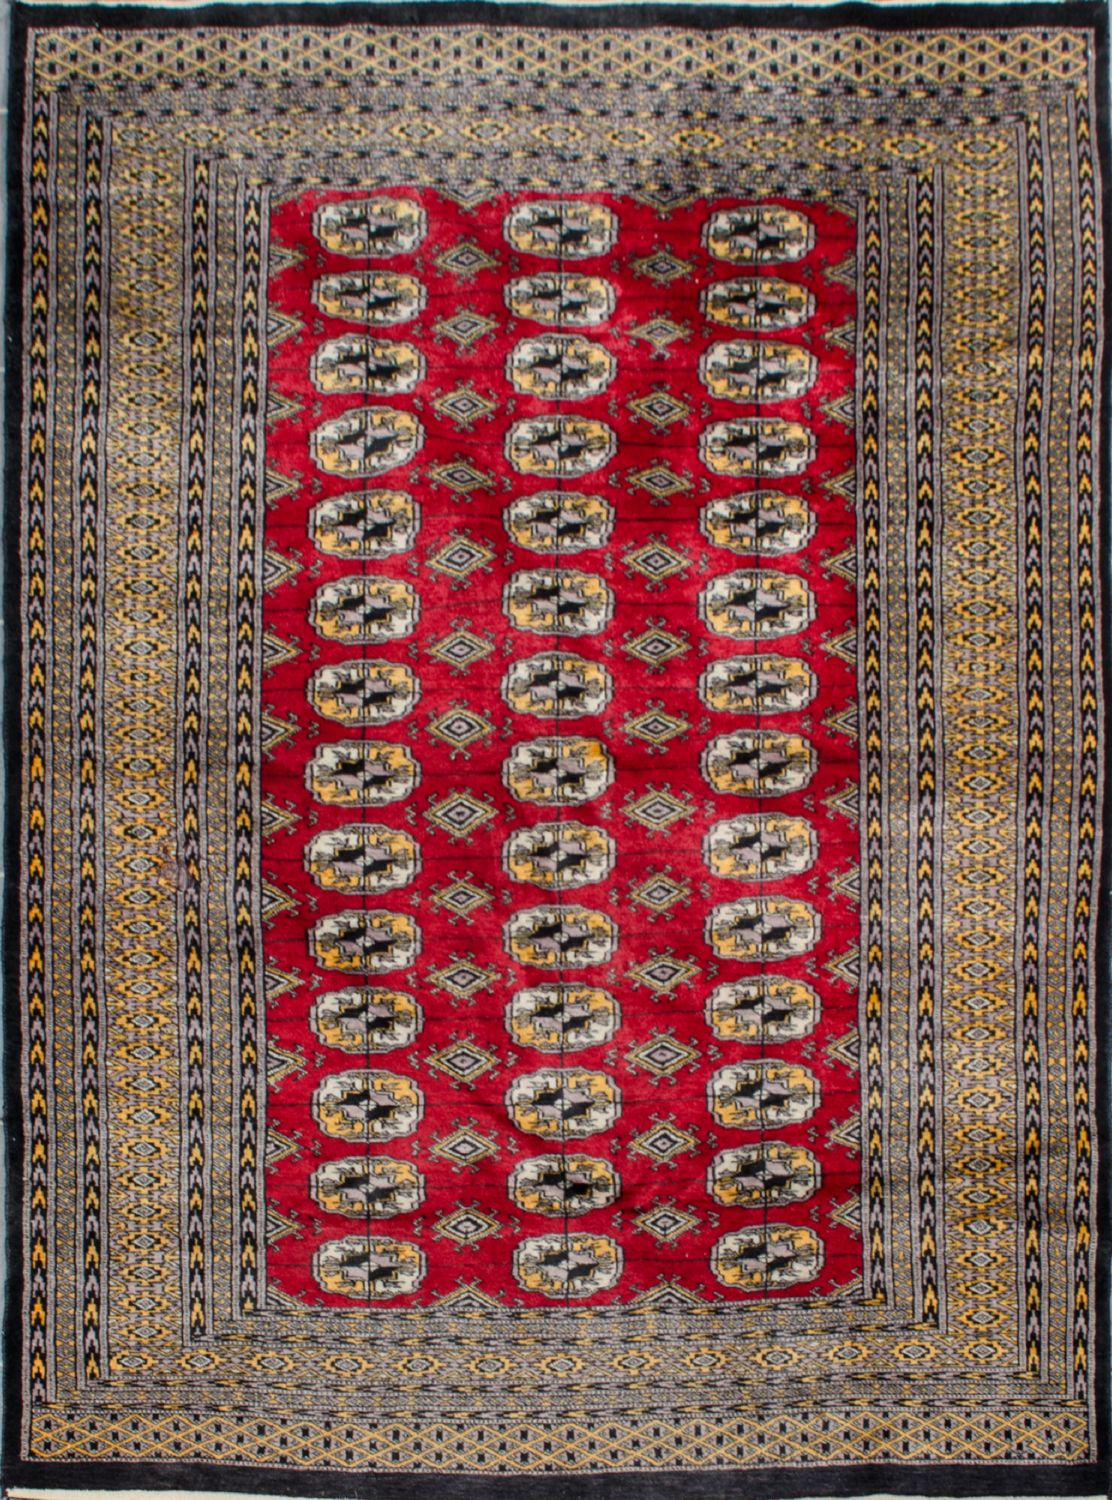 TAPPETO Kashmir, trama e ordito in cotone e vello in lana. XX secolo Misure: cm 186 x 127